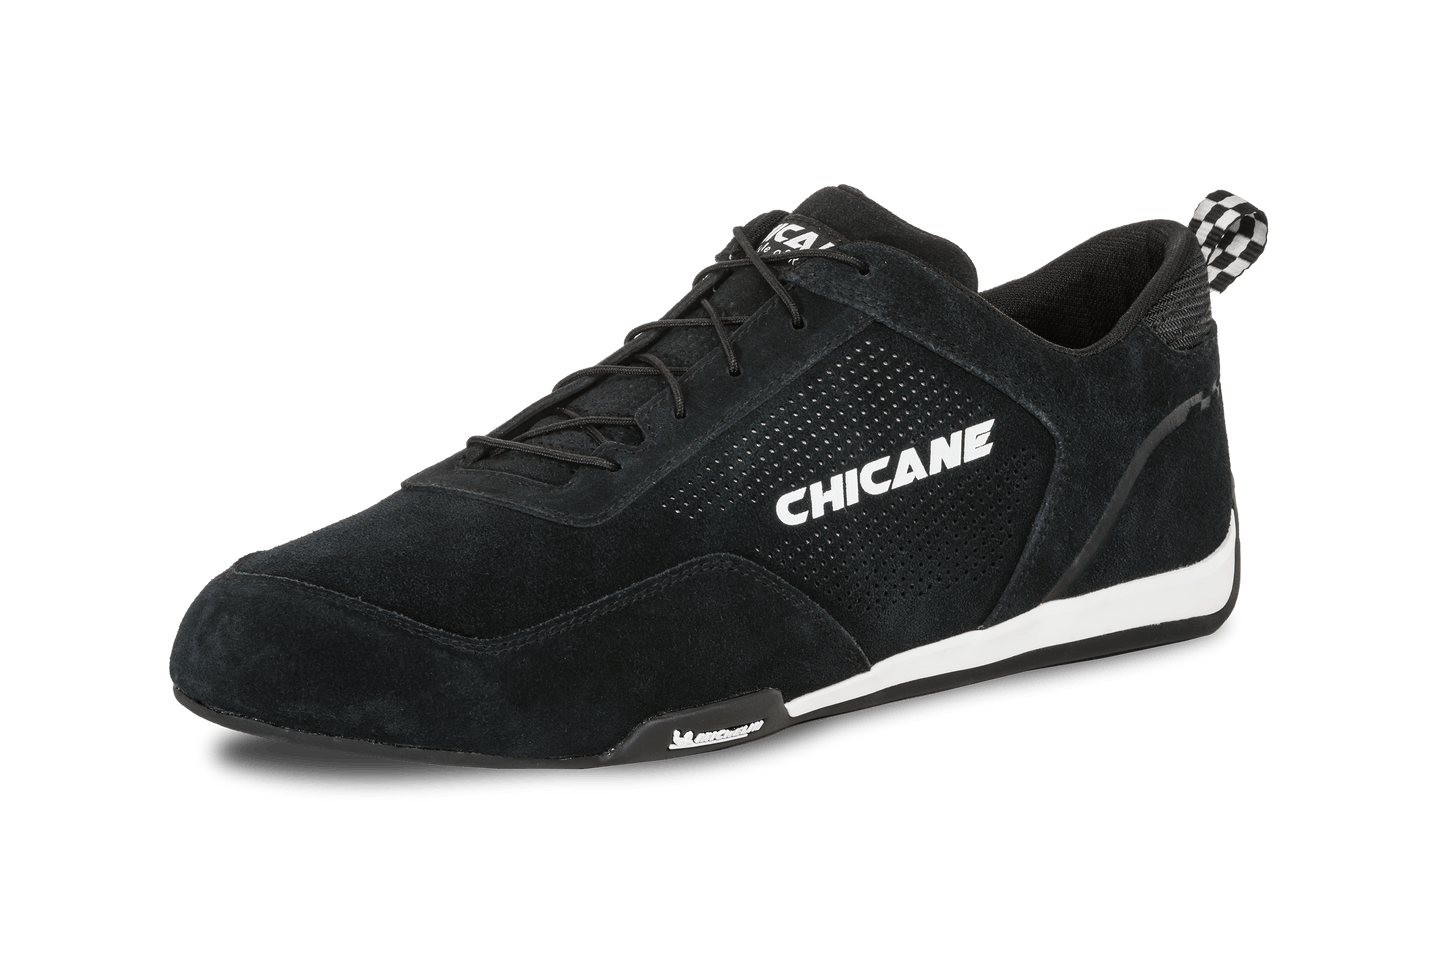 Chicane Men's Speedster Racing Shoe, Black